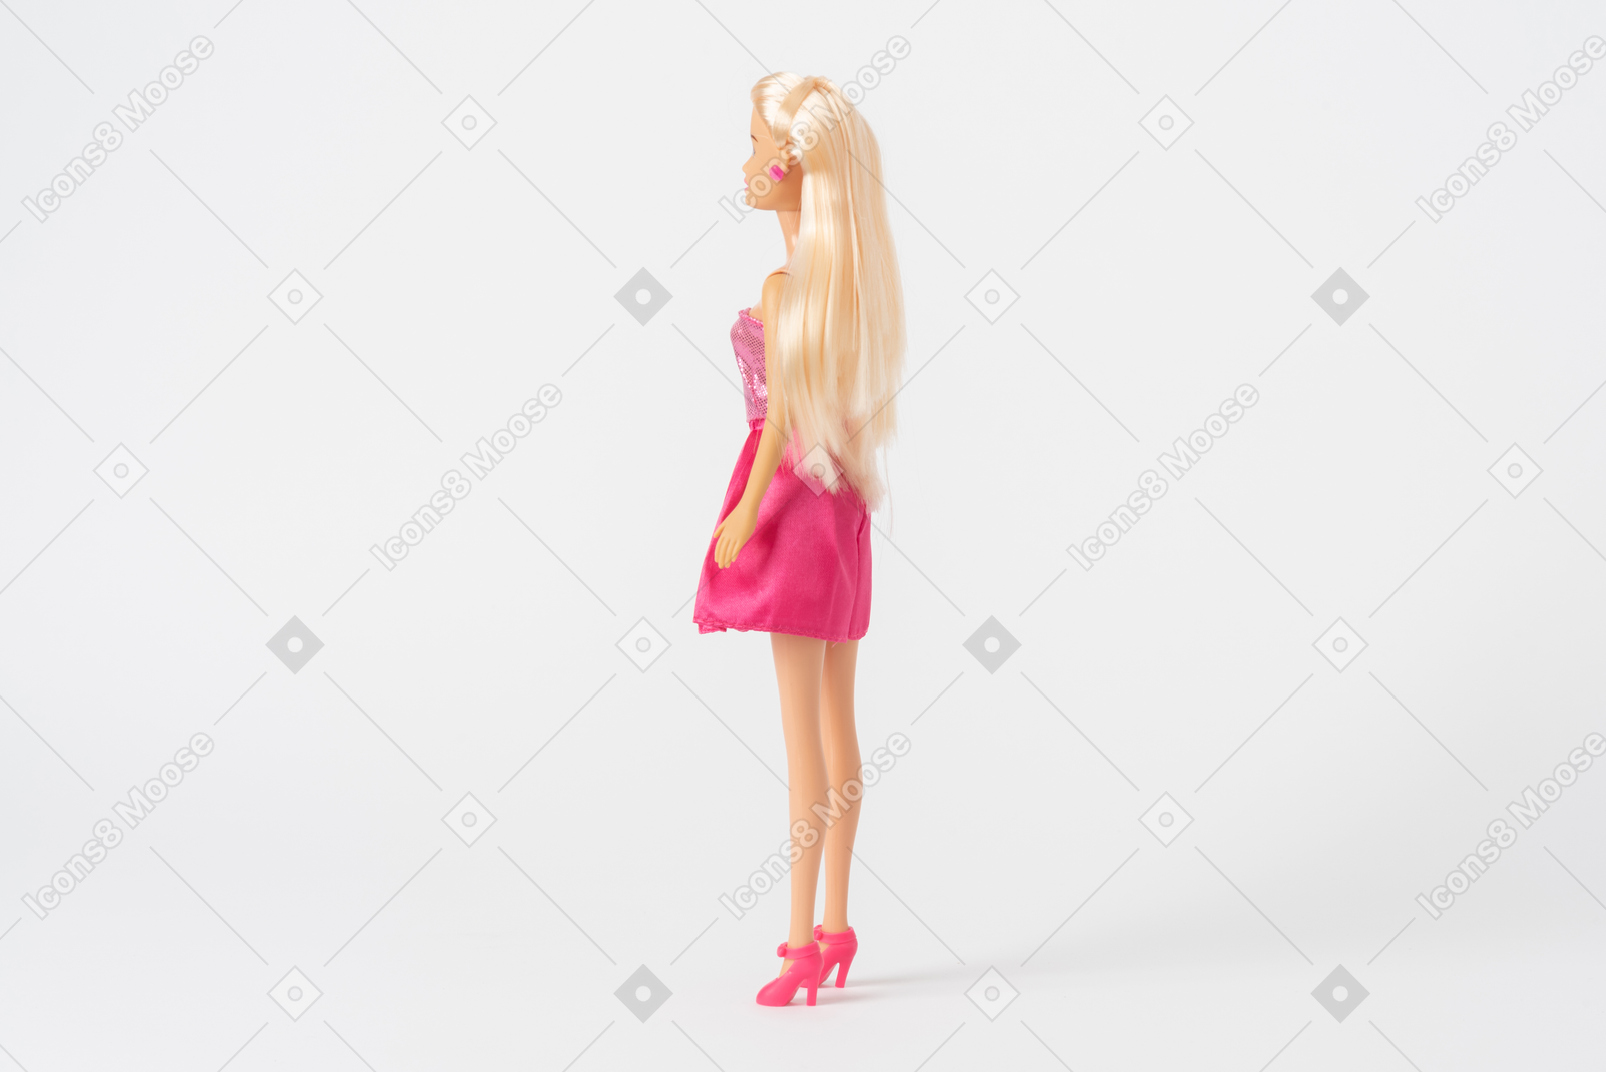 Um tiro de lado de uma boneca barbie em um vestido rosa brilhante e salto alto rosa, de pé isolado contra um fundo branco liso